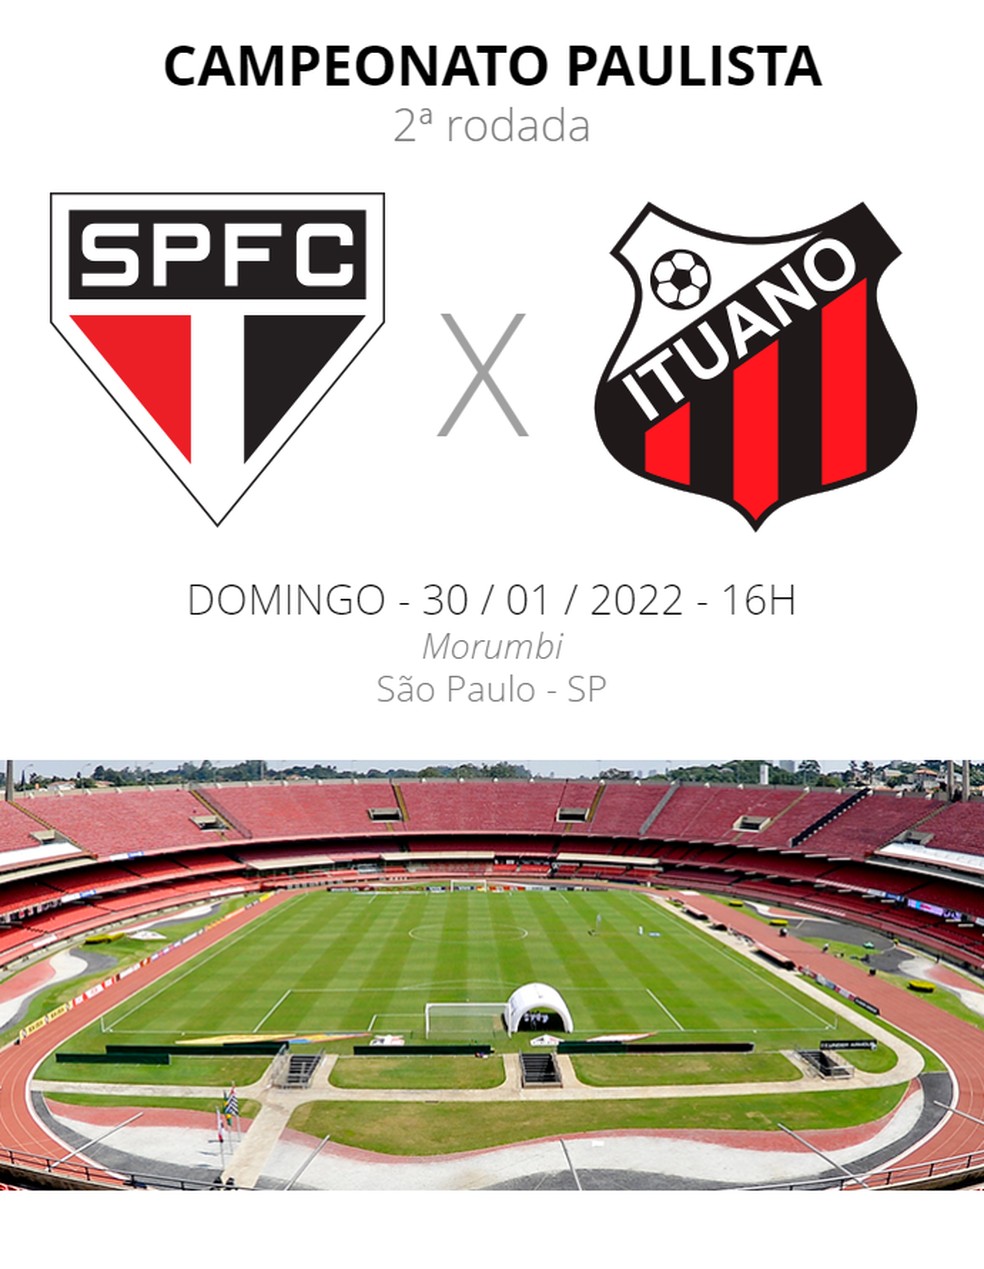 Onde assistir ao vivo a São Paulo x Ituano, pelo Campeonato Paulista 2022?